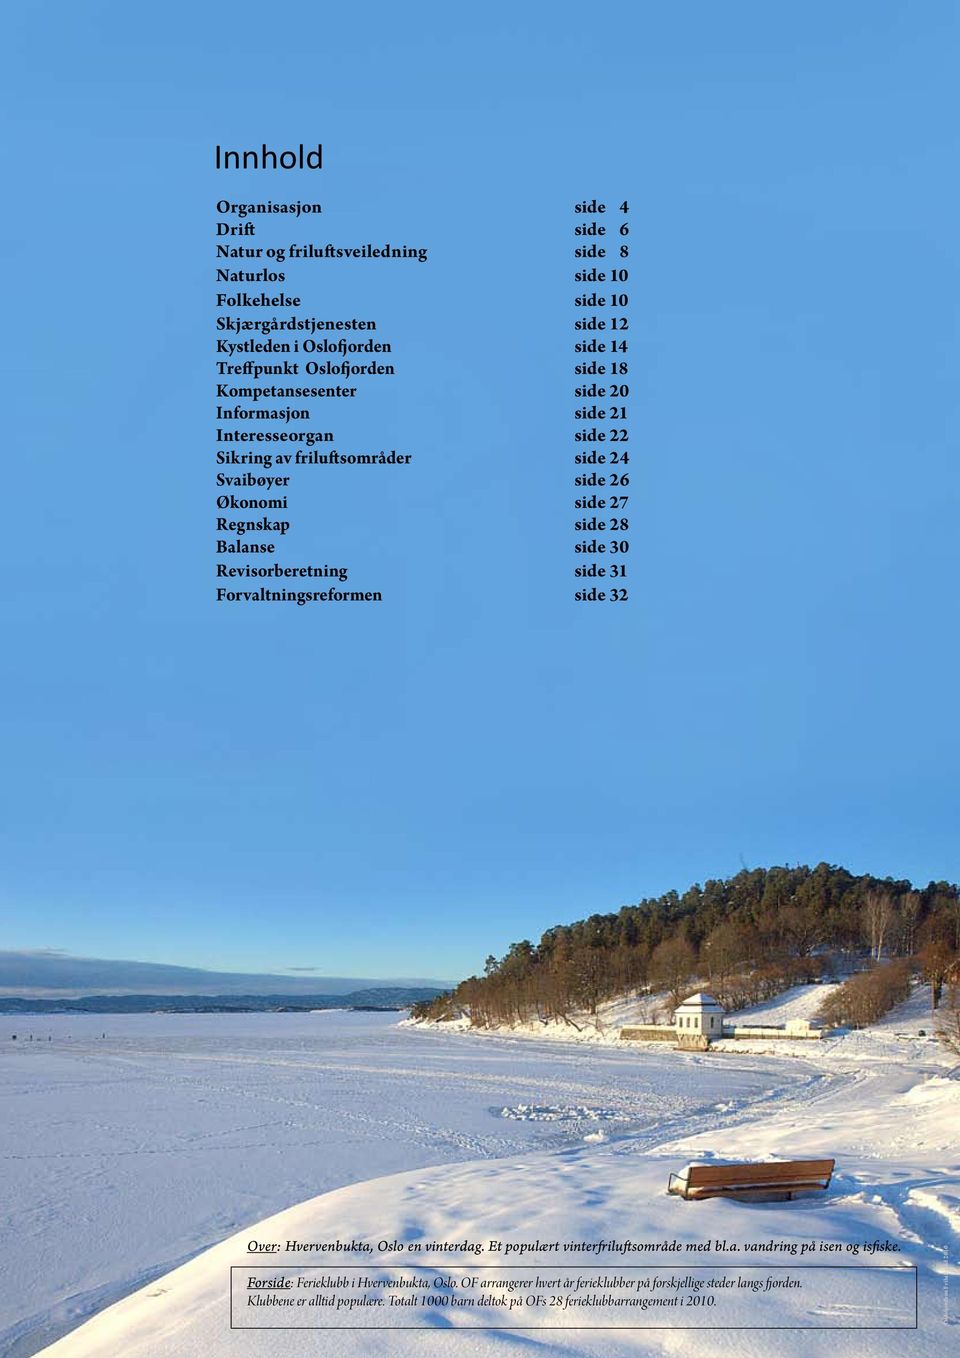 30 Revisorberetning side 31 Forvaltningsreformen side 32 Over: Hvervenbukta, Oslo en vinterdag. Et populært vinterfriluftsområde med bl.a. vandring på isen og isfiske.